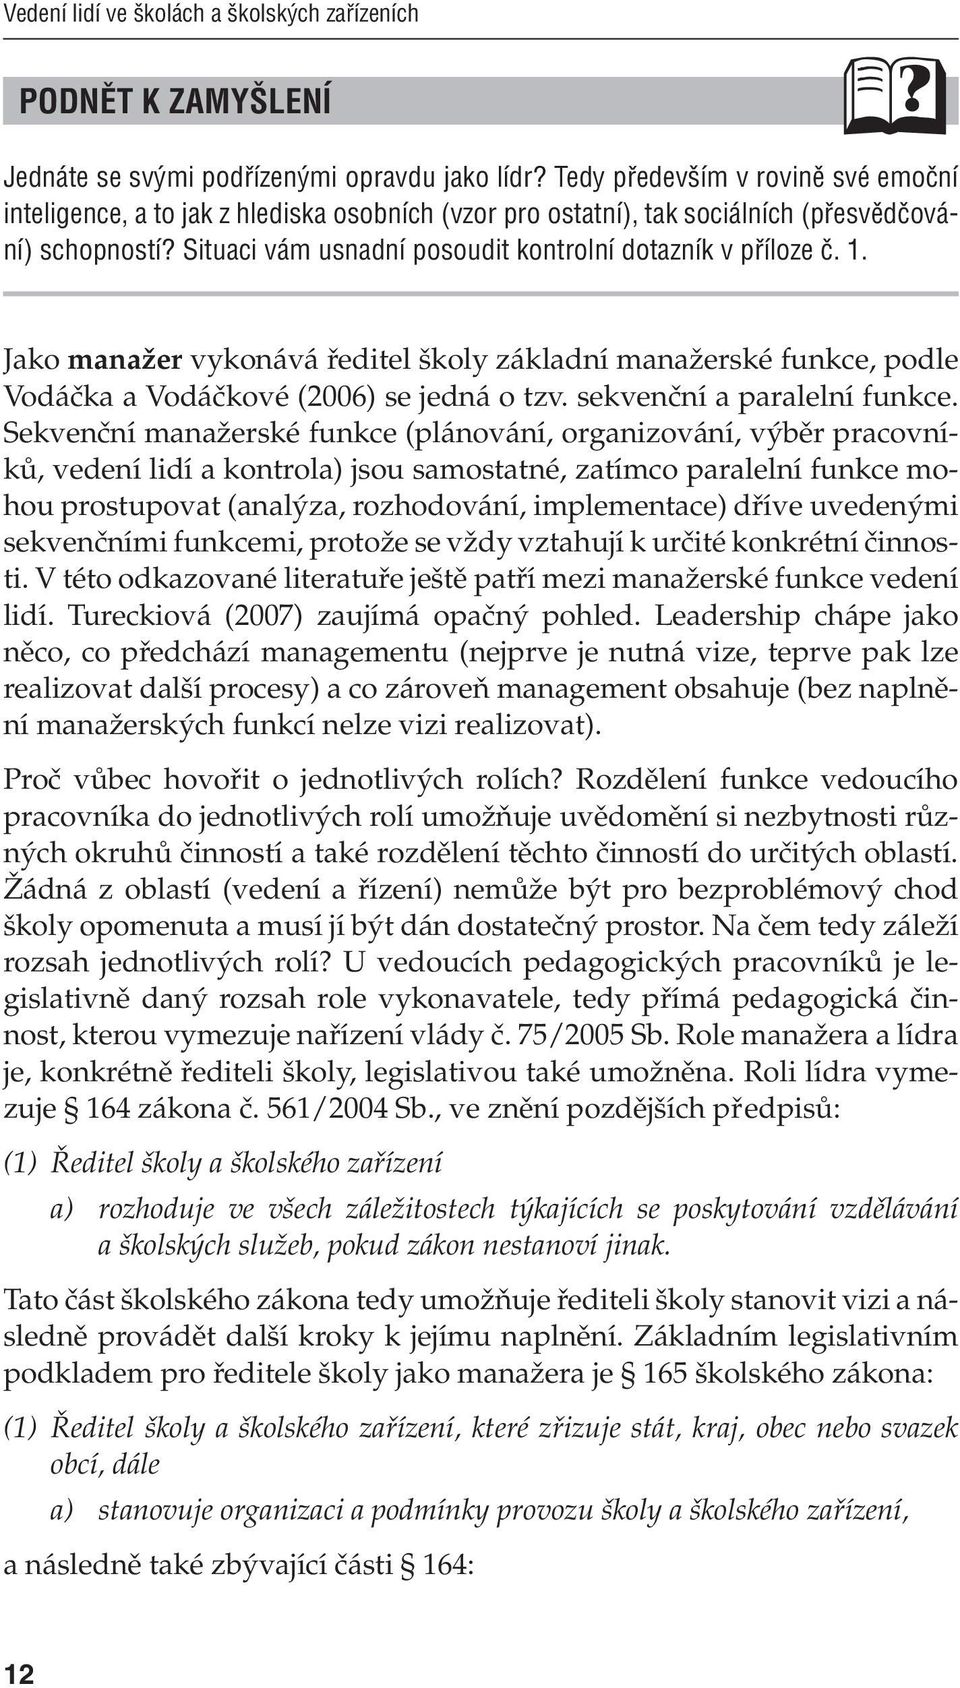 1. Jako manažer vykonává ředitel školy základní manažerské funkce, podle Vodáčka a Vodáčkové (2006) se jedná o tzv. sekvenční a paralelní funkce.